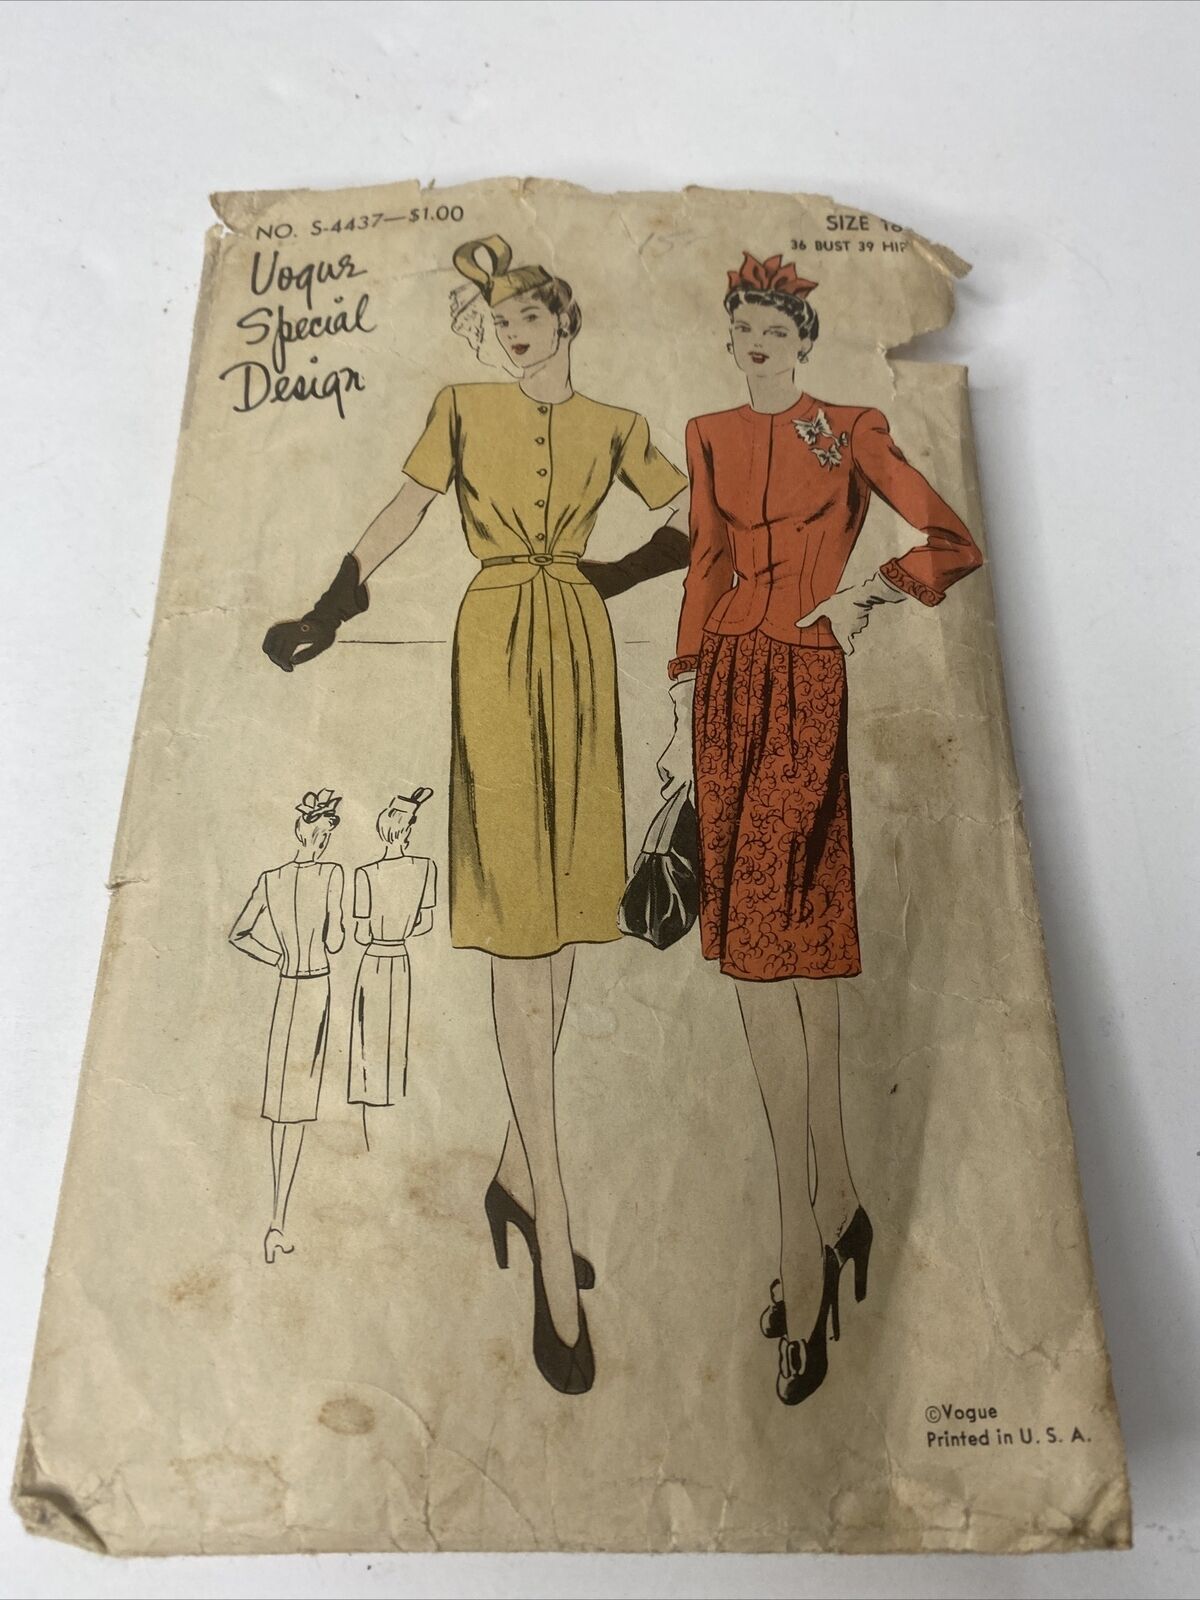 Vogue Special Design 4437 Vintage Sewing Pattern 1930s 1940s Dress Suit Sz 18